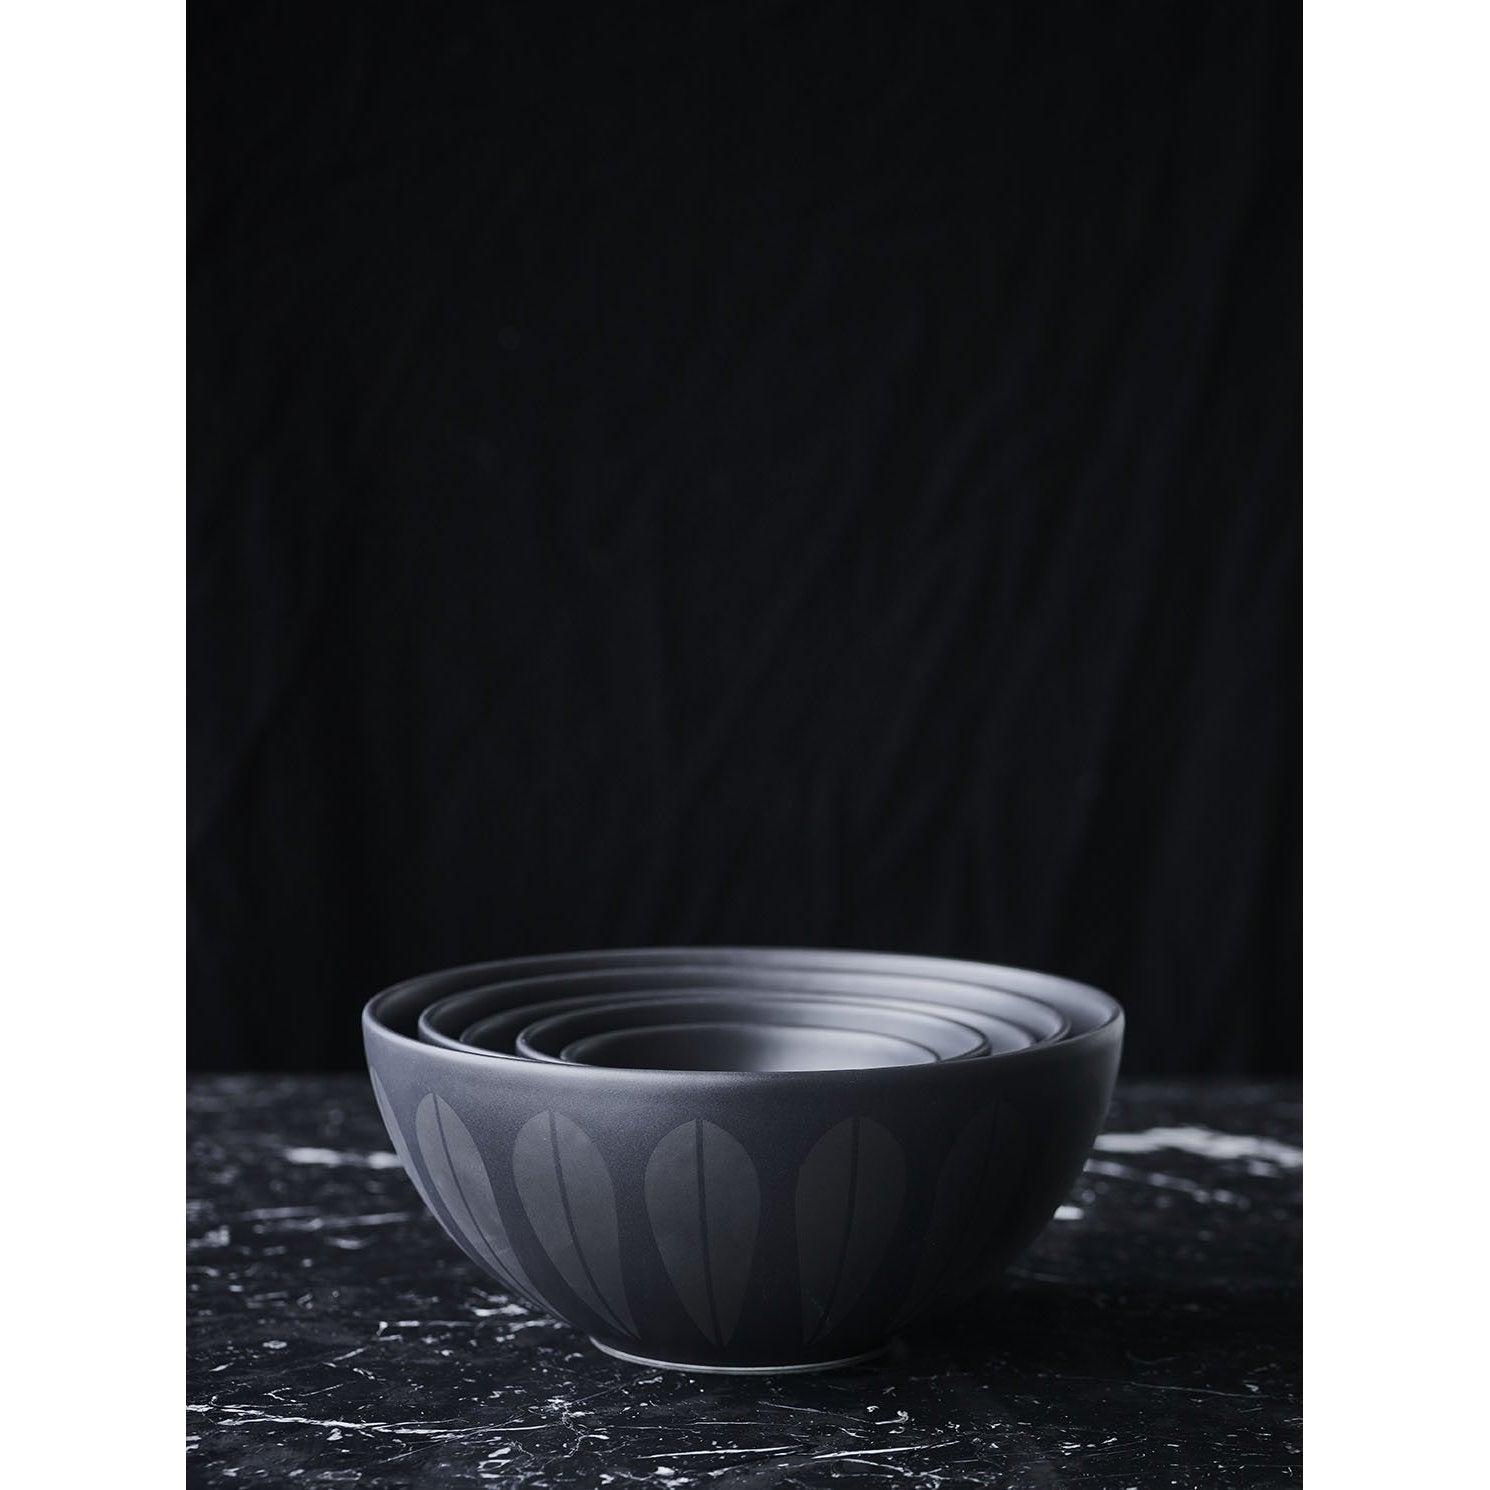 Lucie Kaas Arne Clausen Bowl Black, 18 cm